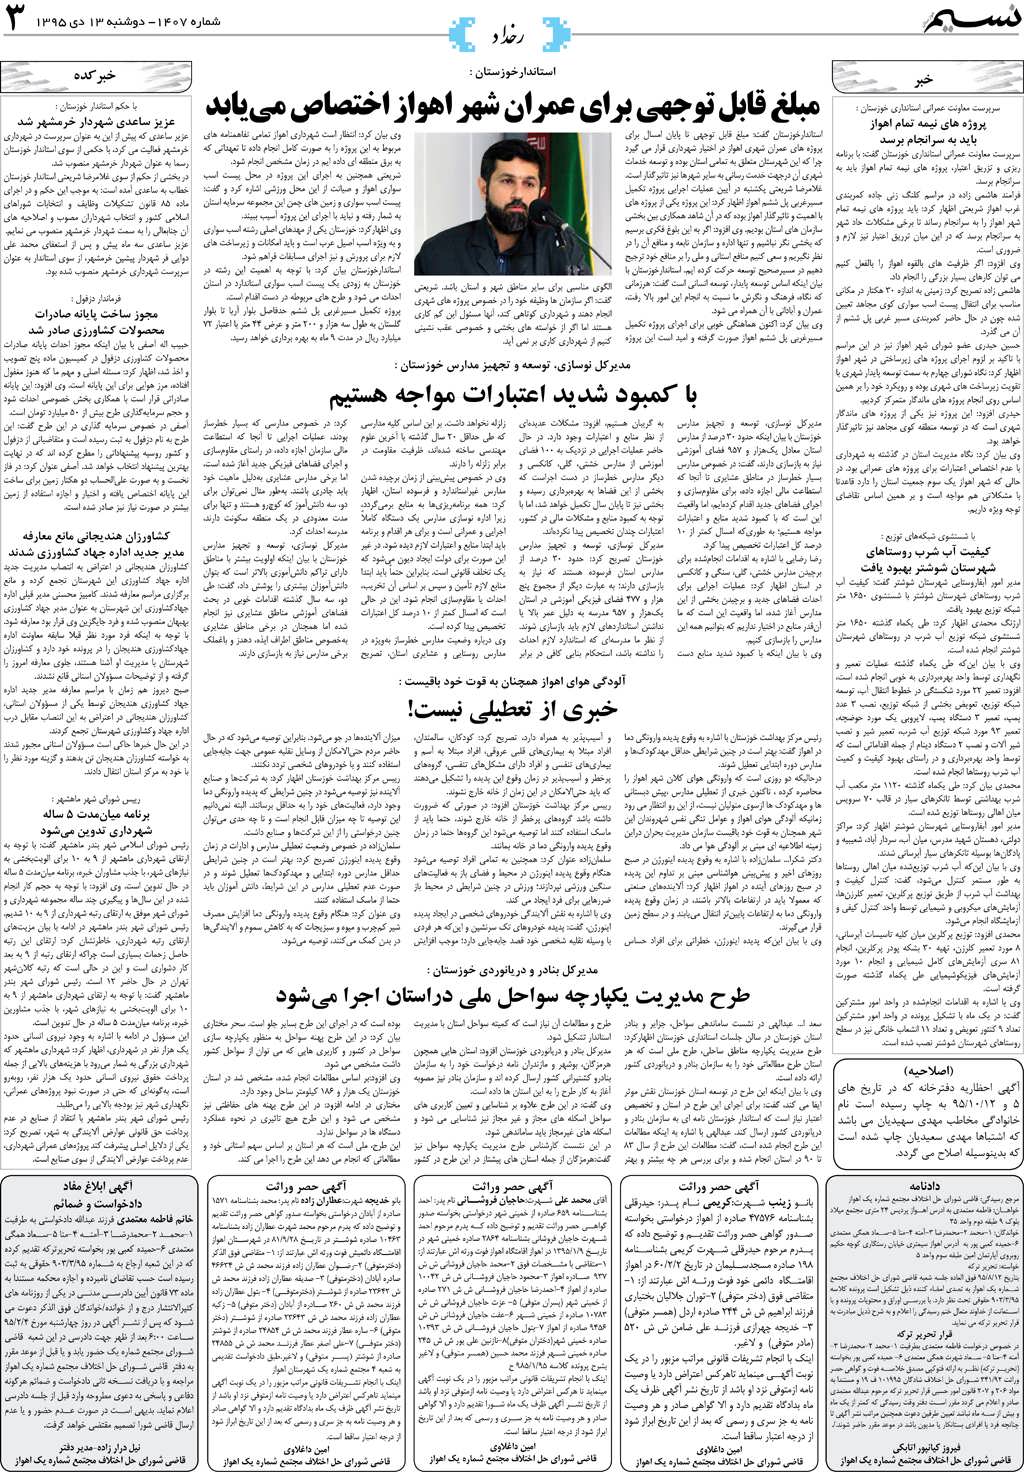 صفحه رخداد روزنامه نسیم شماره 1407